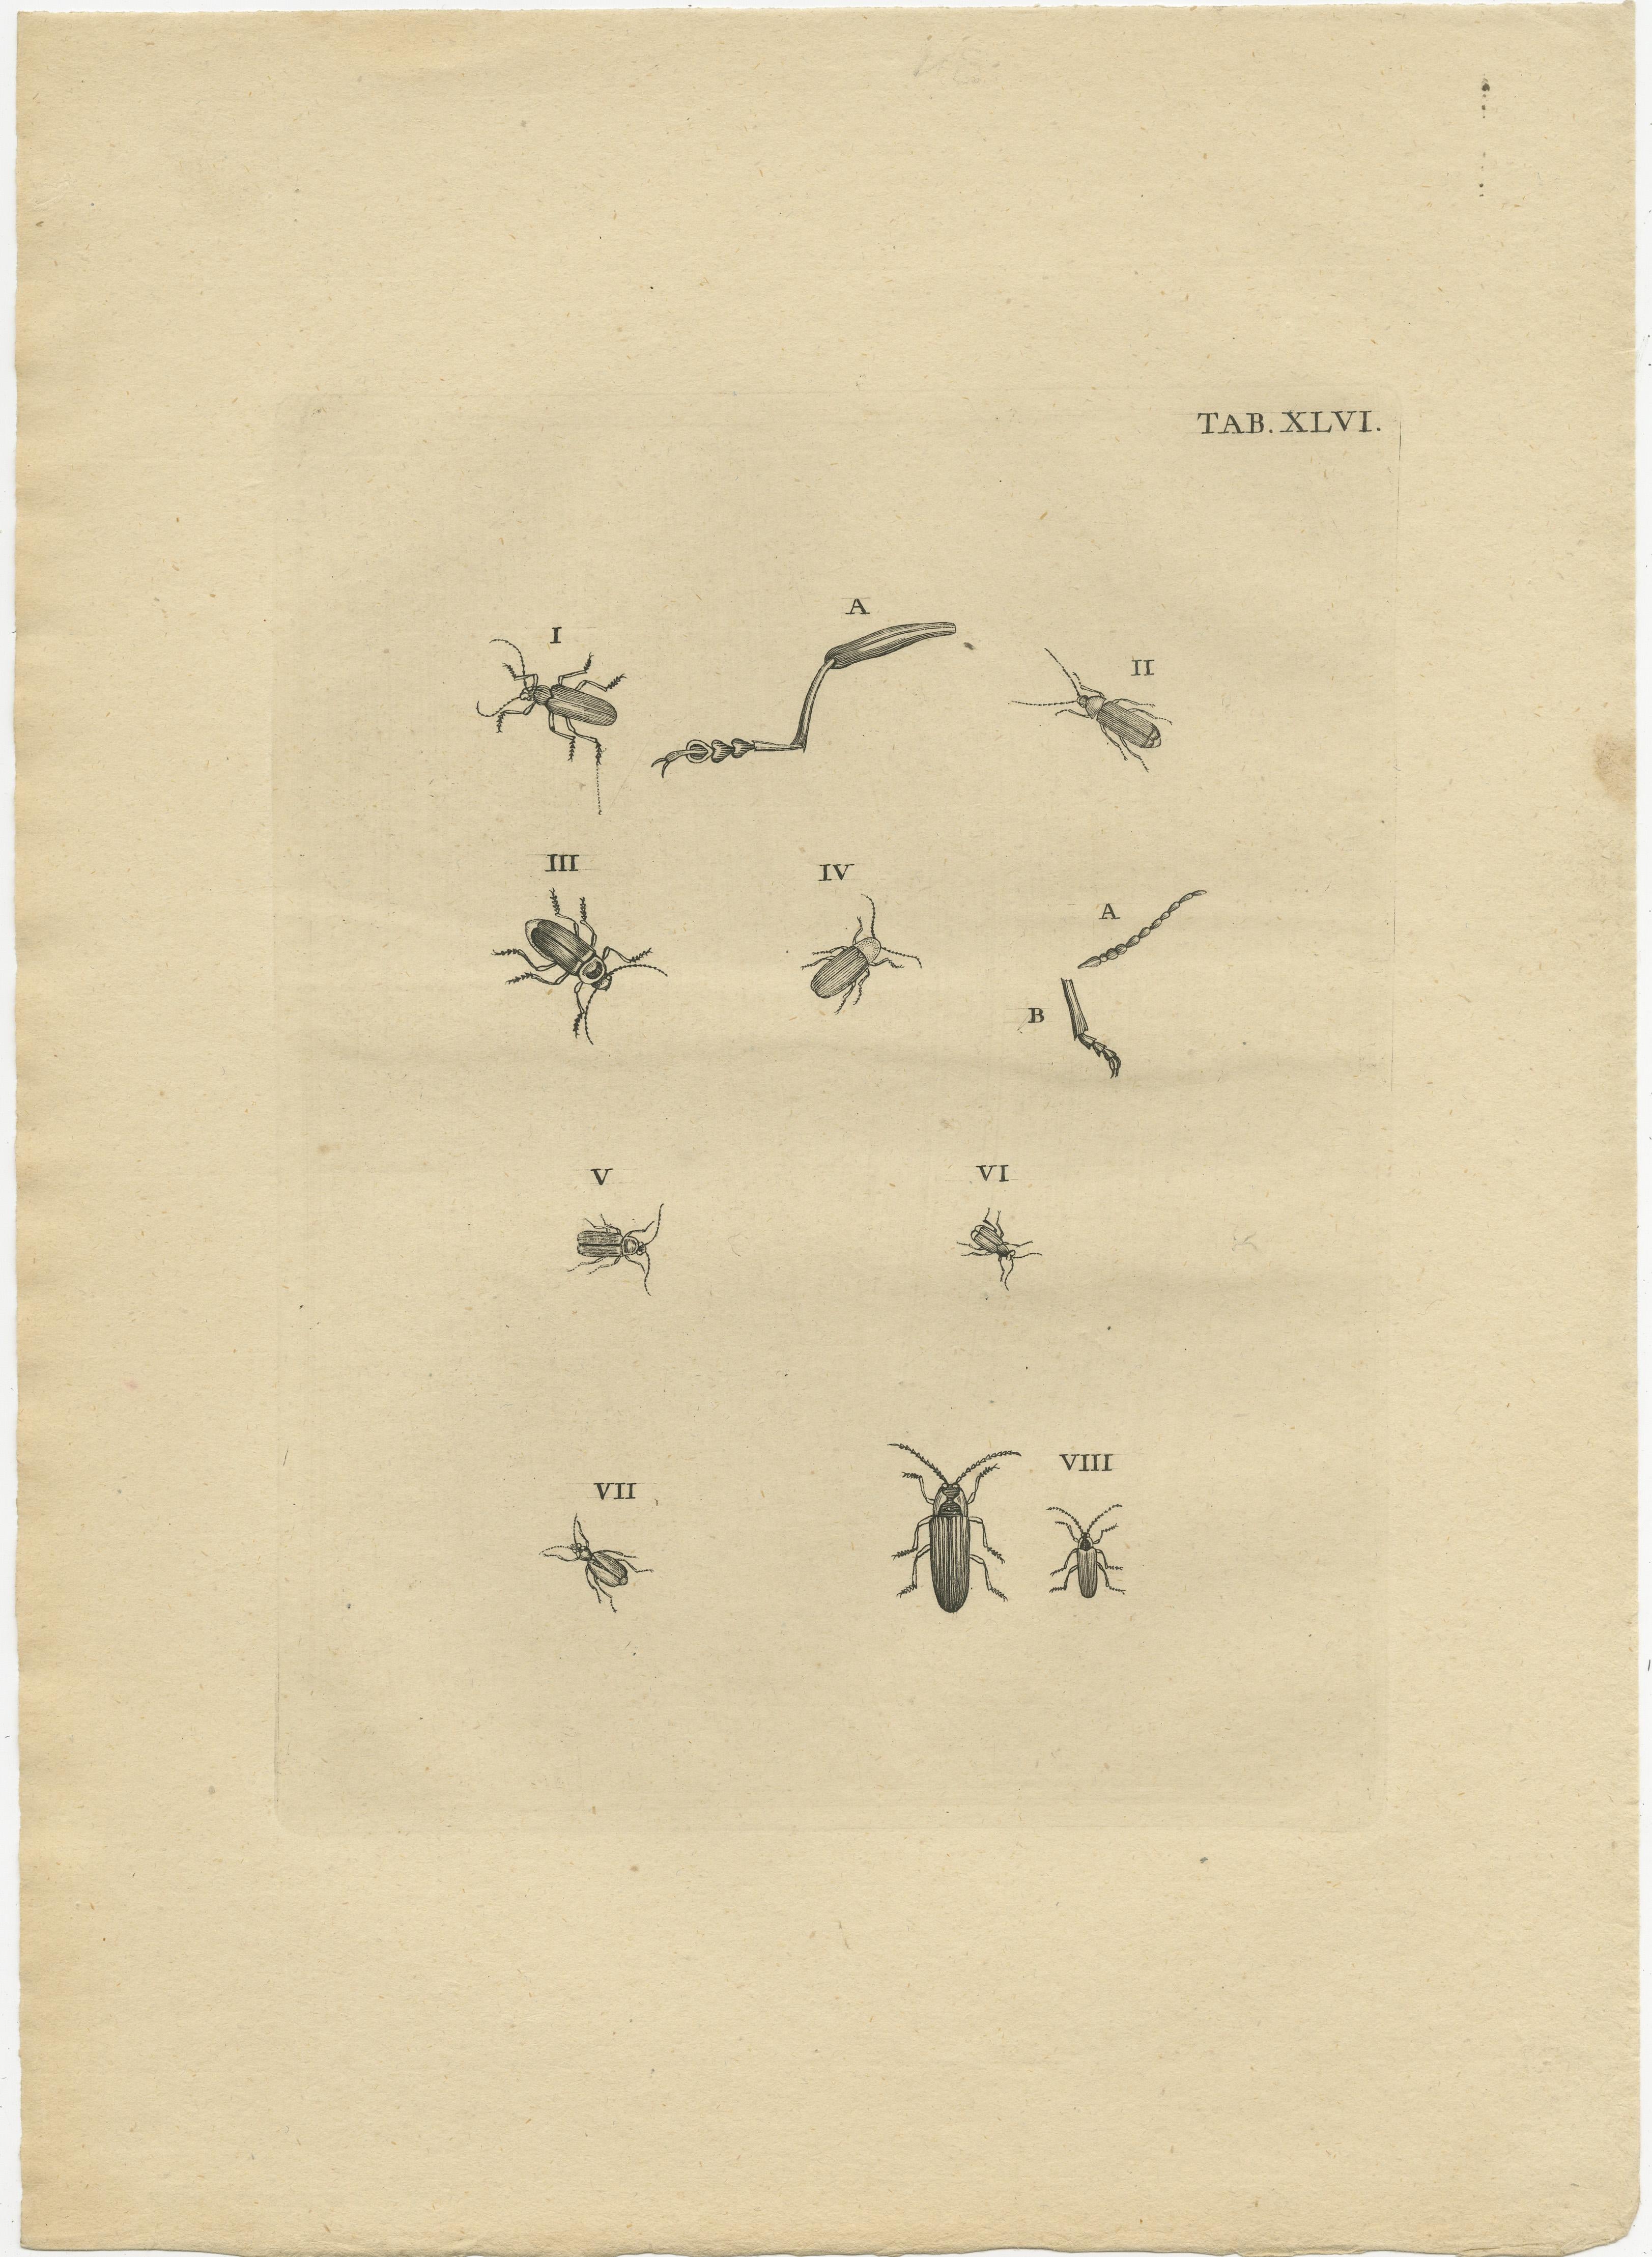 Ensemble de deux impressions originales anciennes de petits insectes / coléoptères. Ces impressions proviennent très probablement d'une édition de l'ouvrage rare 